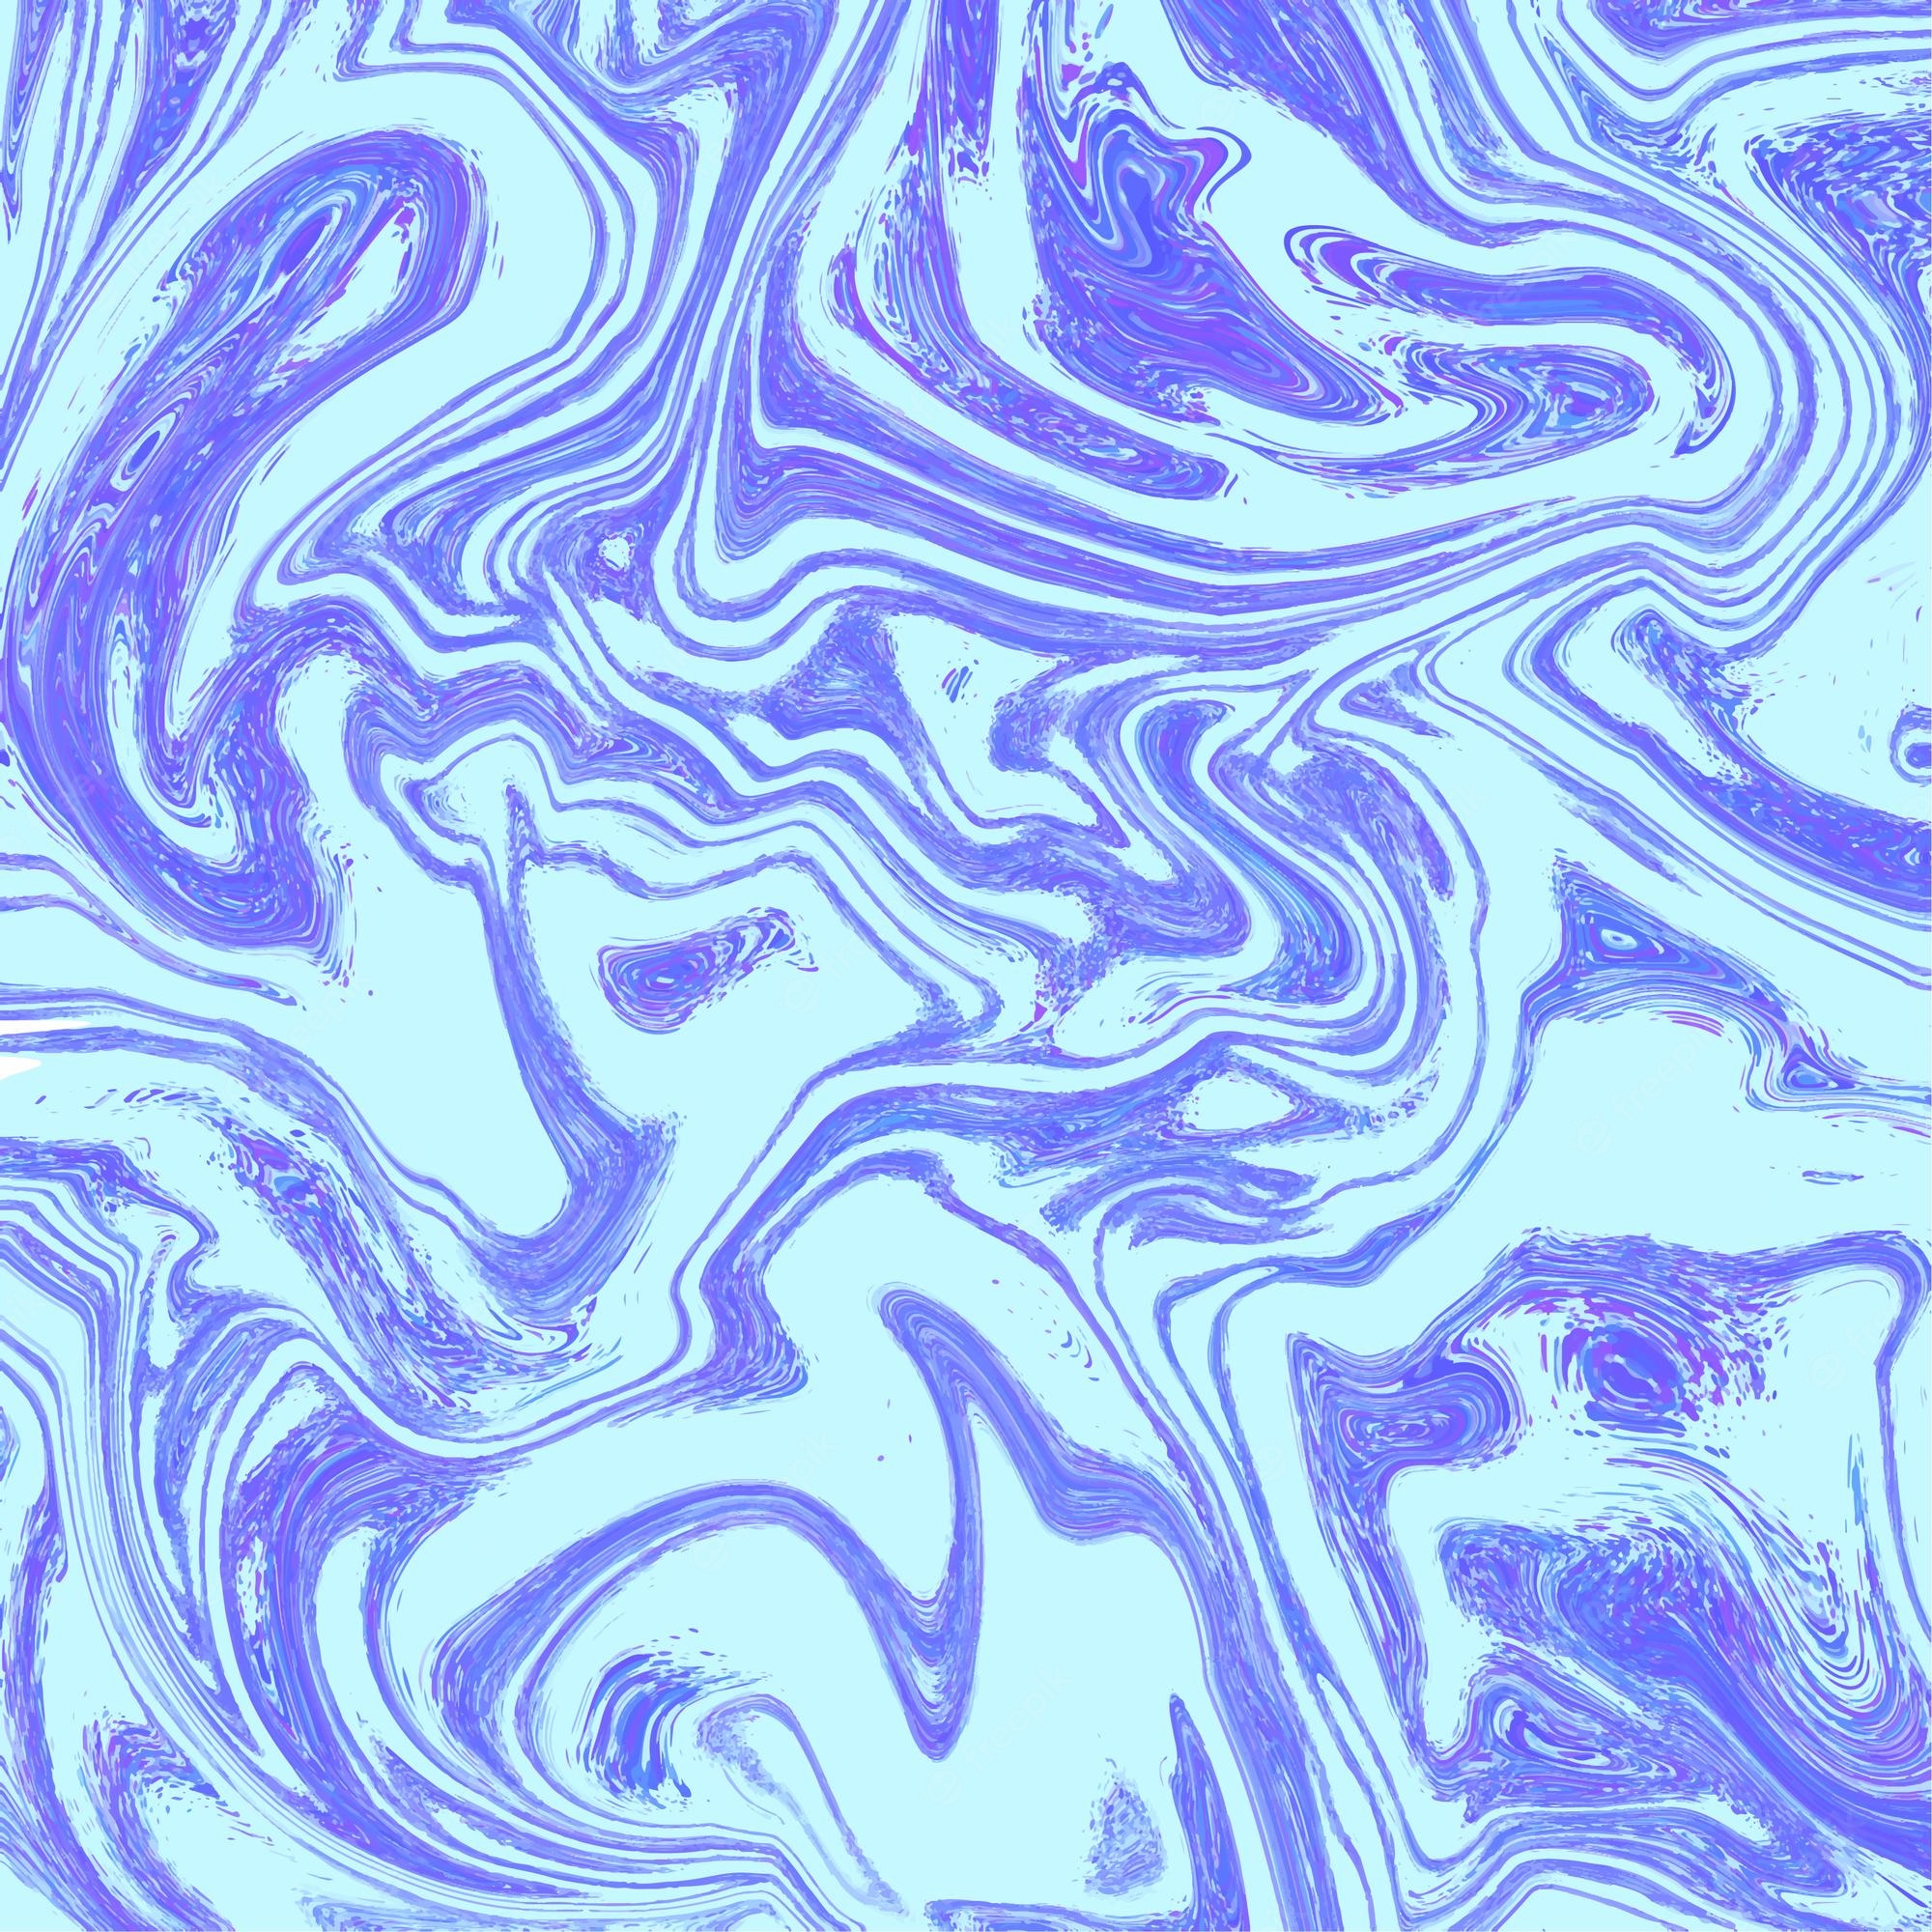 Premium Vector. Blue liquid background liquid texture liquid marble background